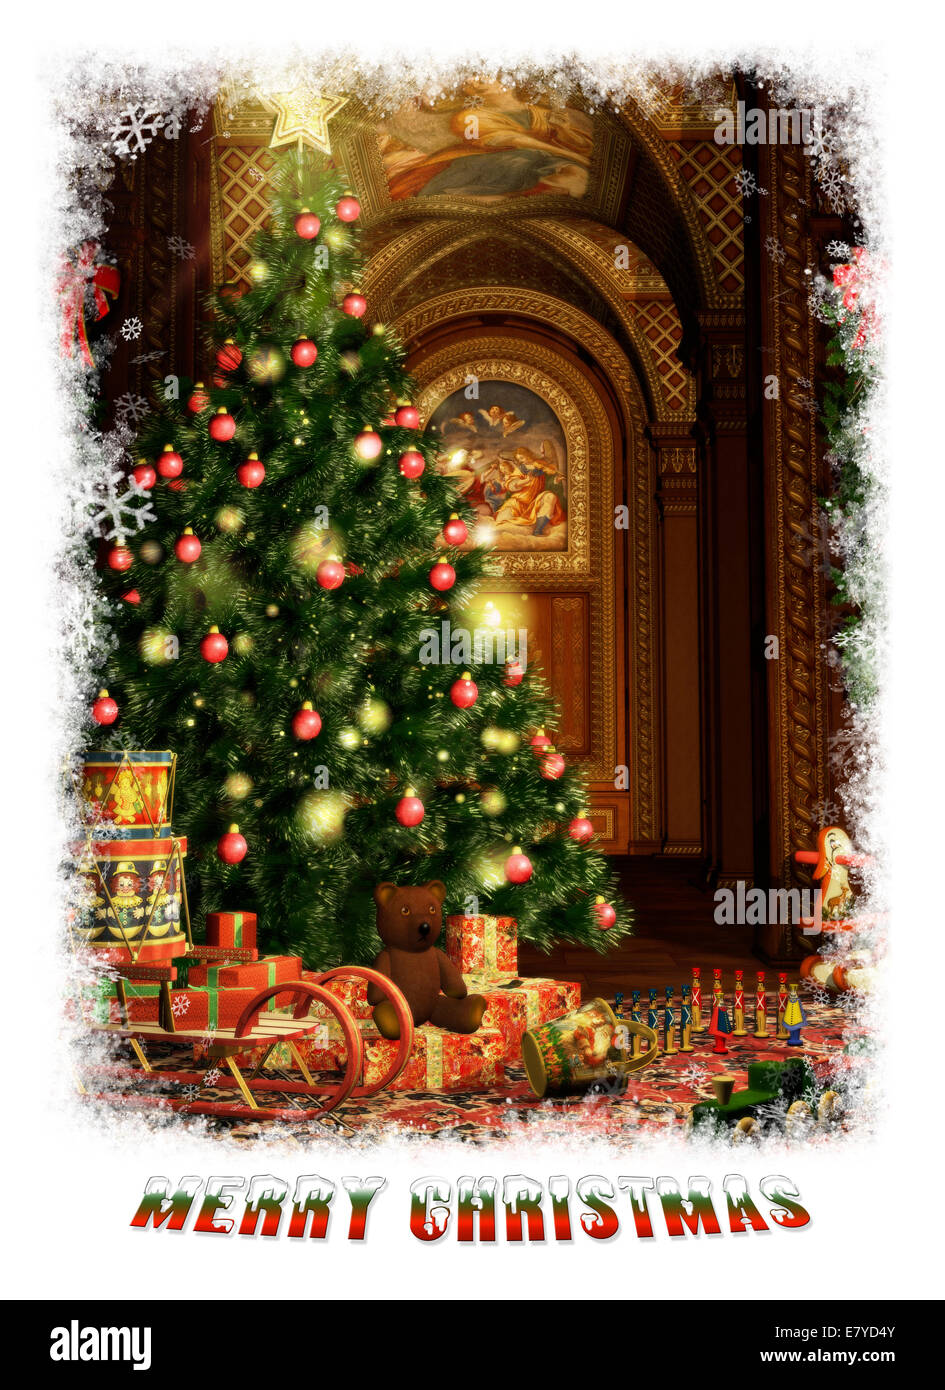 Anni 70 Albero Di Natale Vintage.Cartolina Di Natale Vintage Immagini E Fotos Stock Alamy